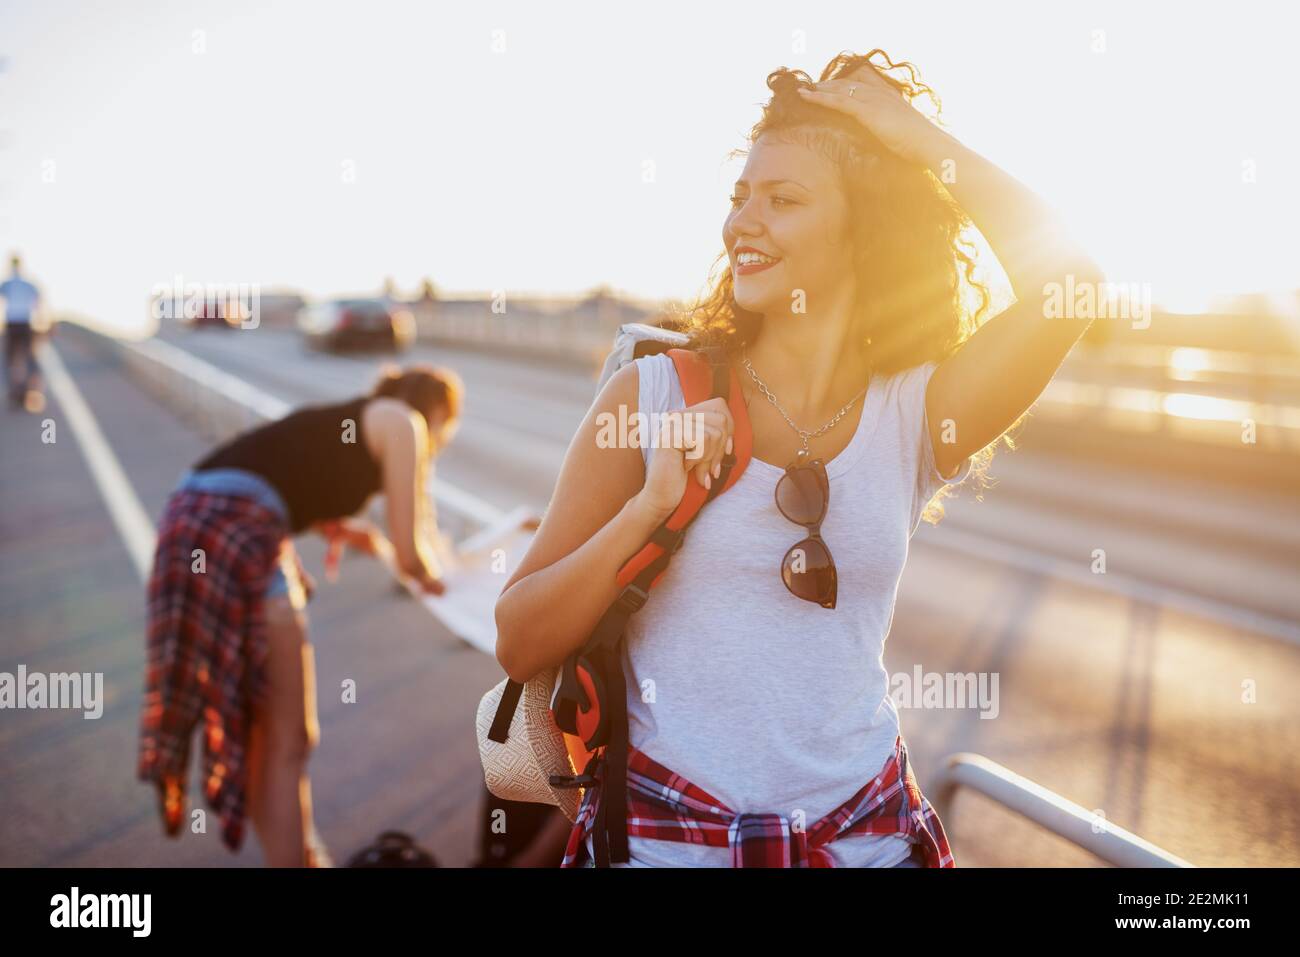 La giovane ragazza bellissima turista sta prendendo una pausa rom a piedi e guardando la vista. Foto Stock